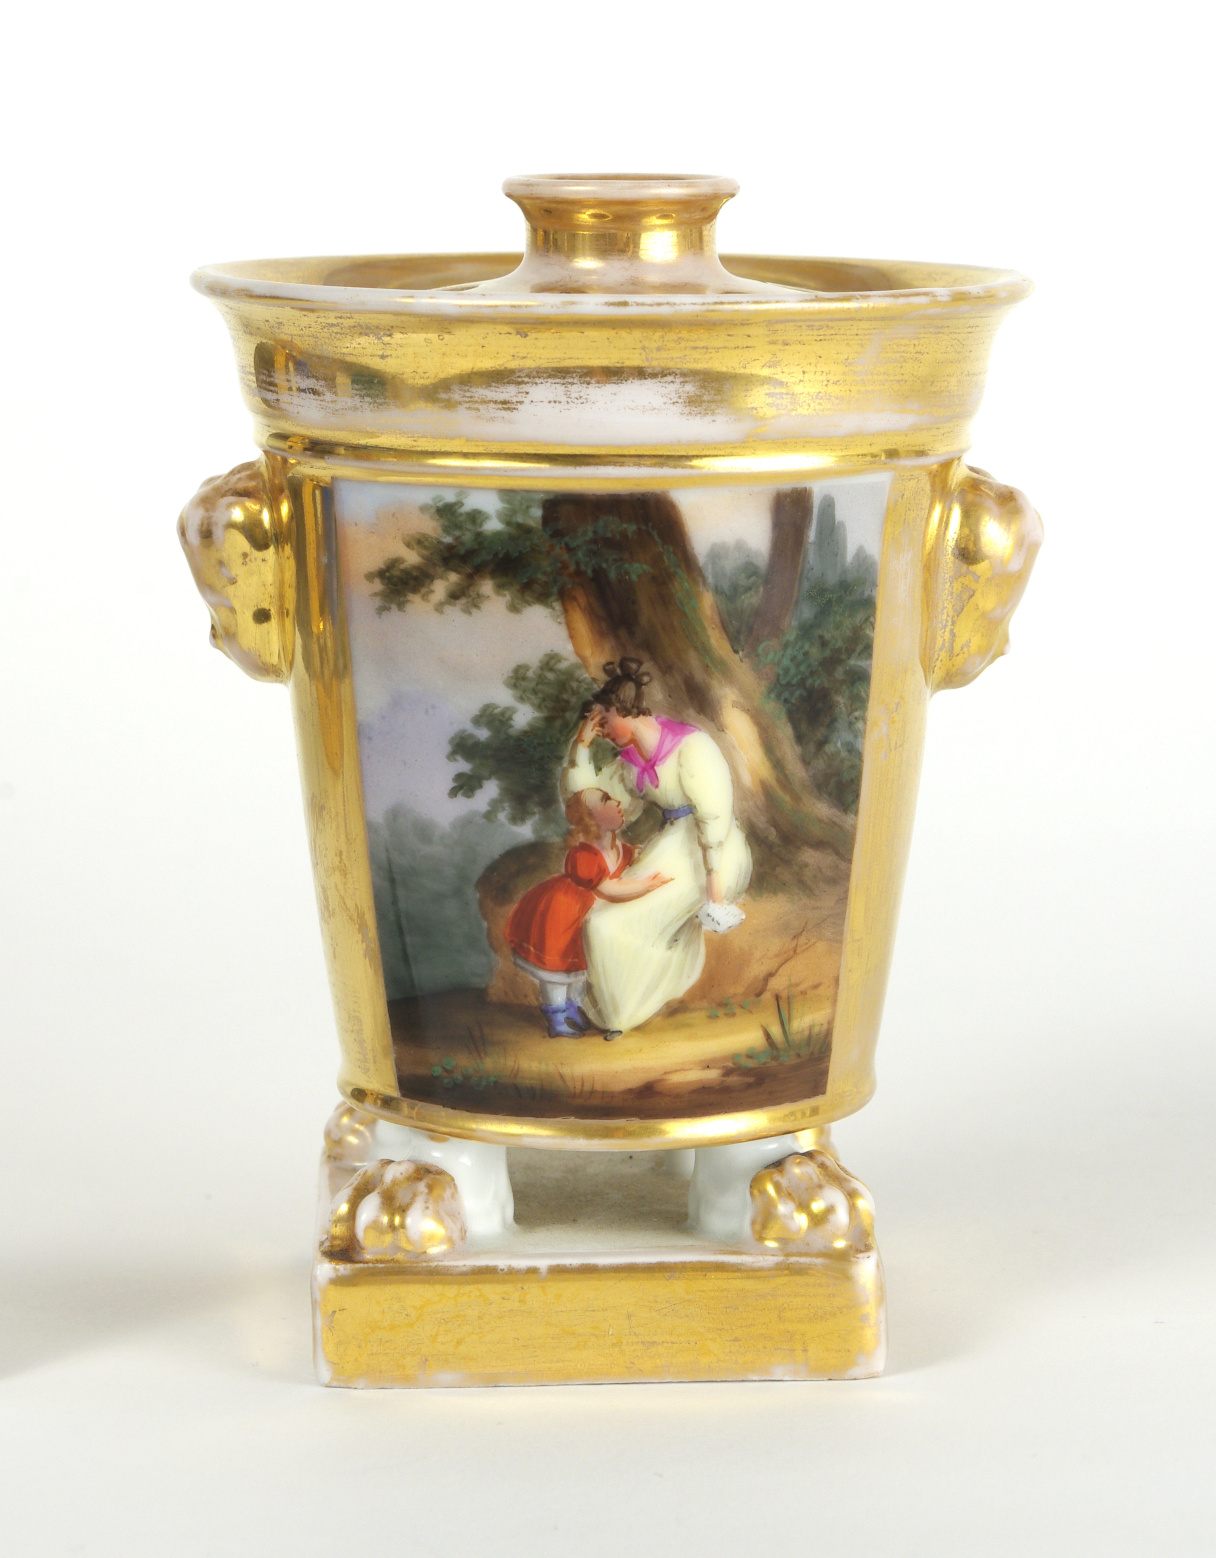 Pair of Old Paris Potpourri Vases, c. 1820-30